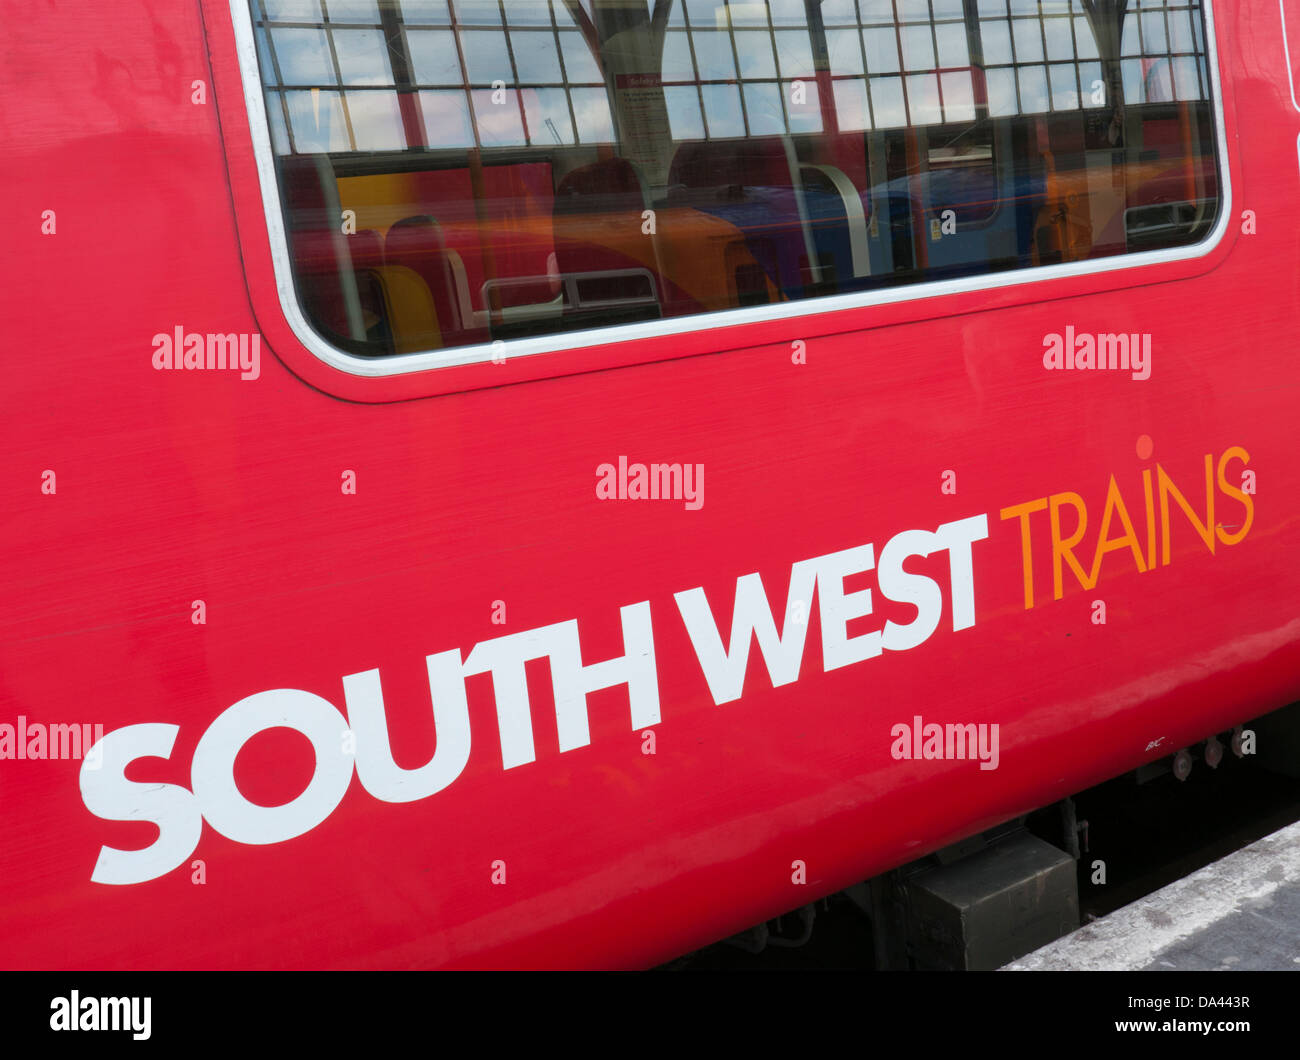 South West Trains in Großbritannien Stockfoto